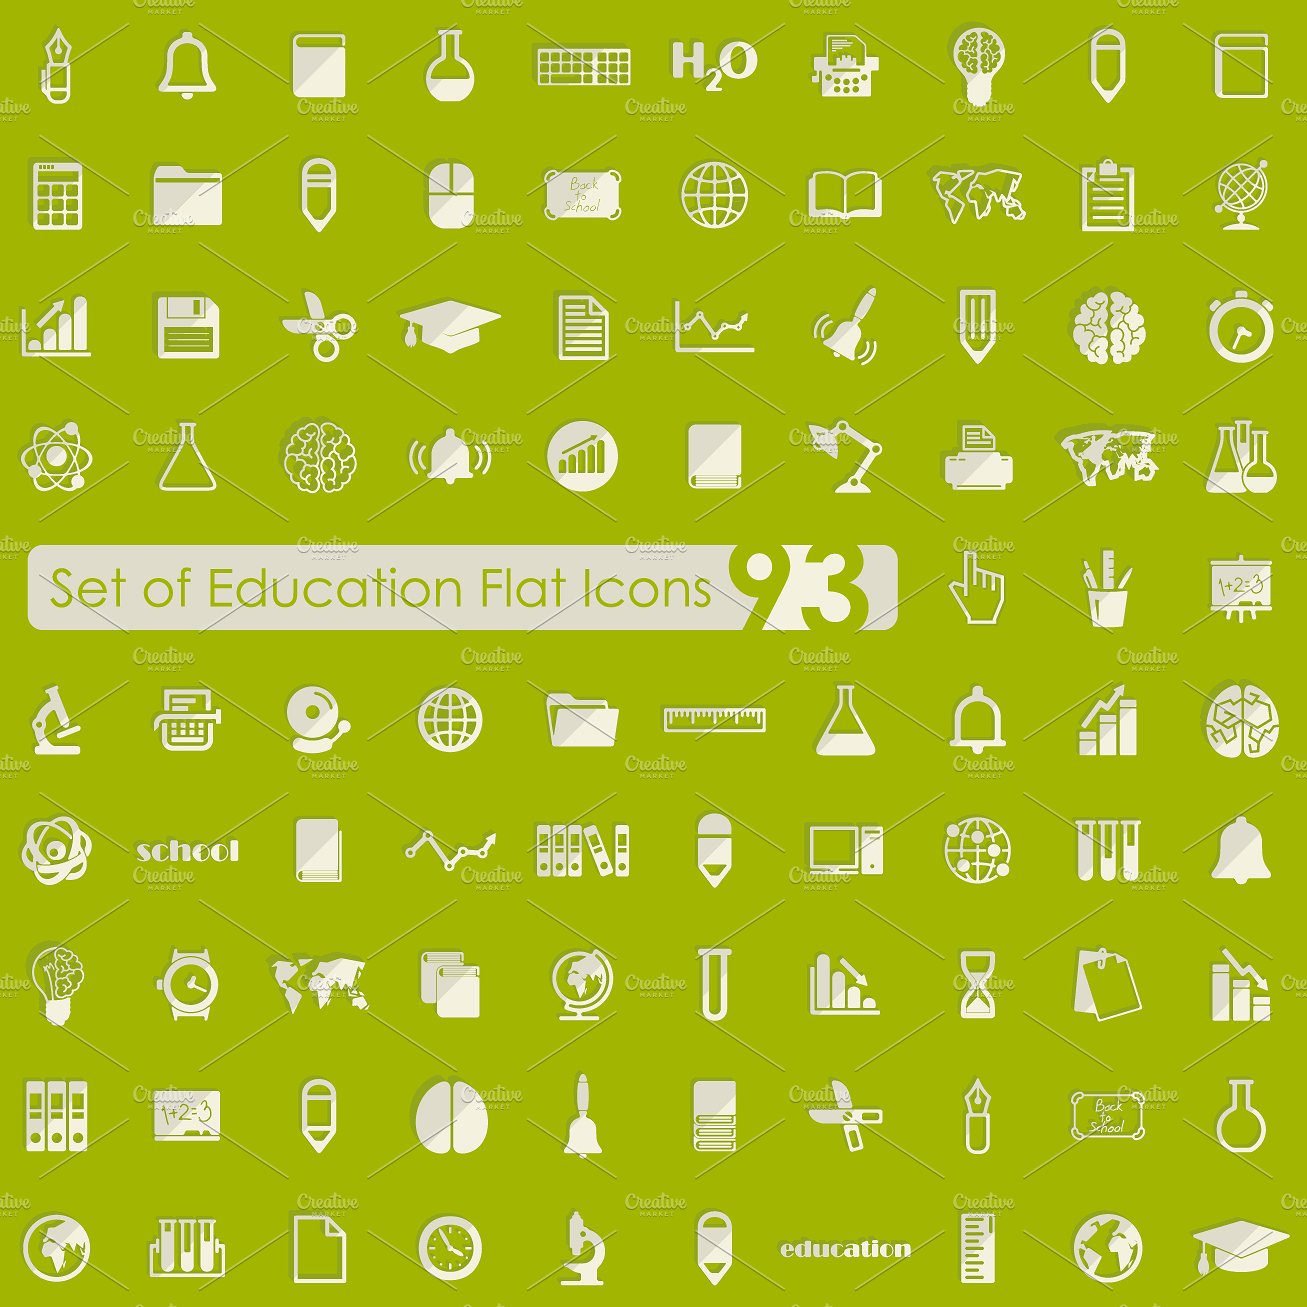 教育图标Set of education icons #30